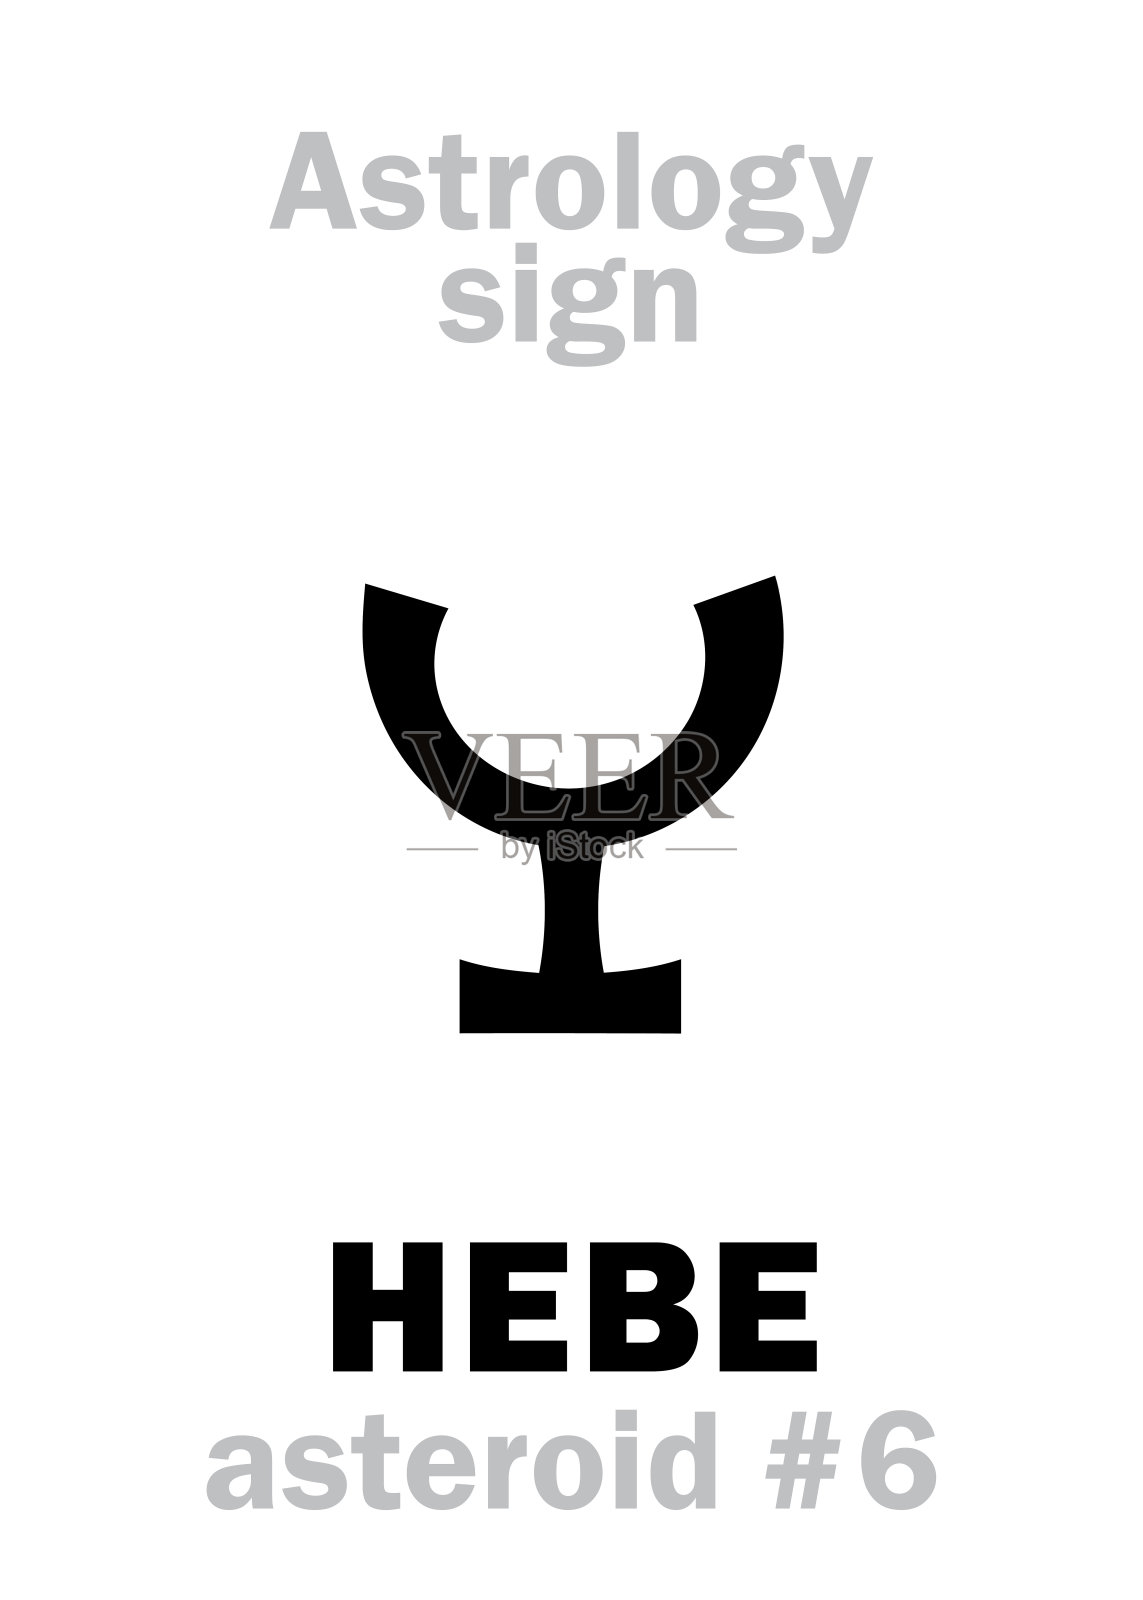 占星字母表:HEBE，小行星#6。象形文字符号(单符号)。插画图片素材